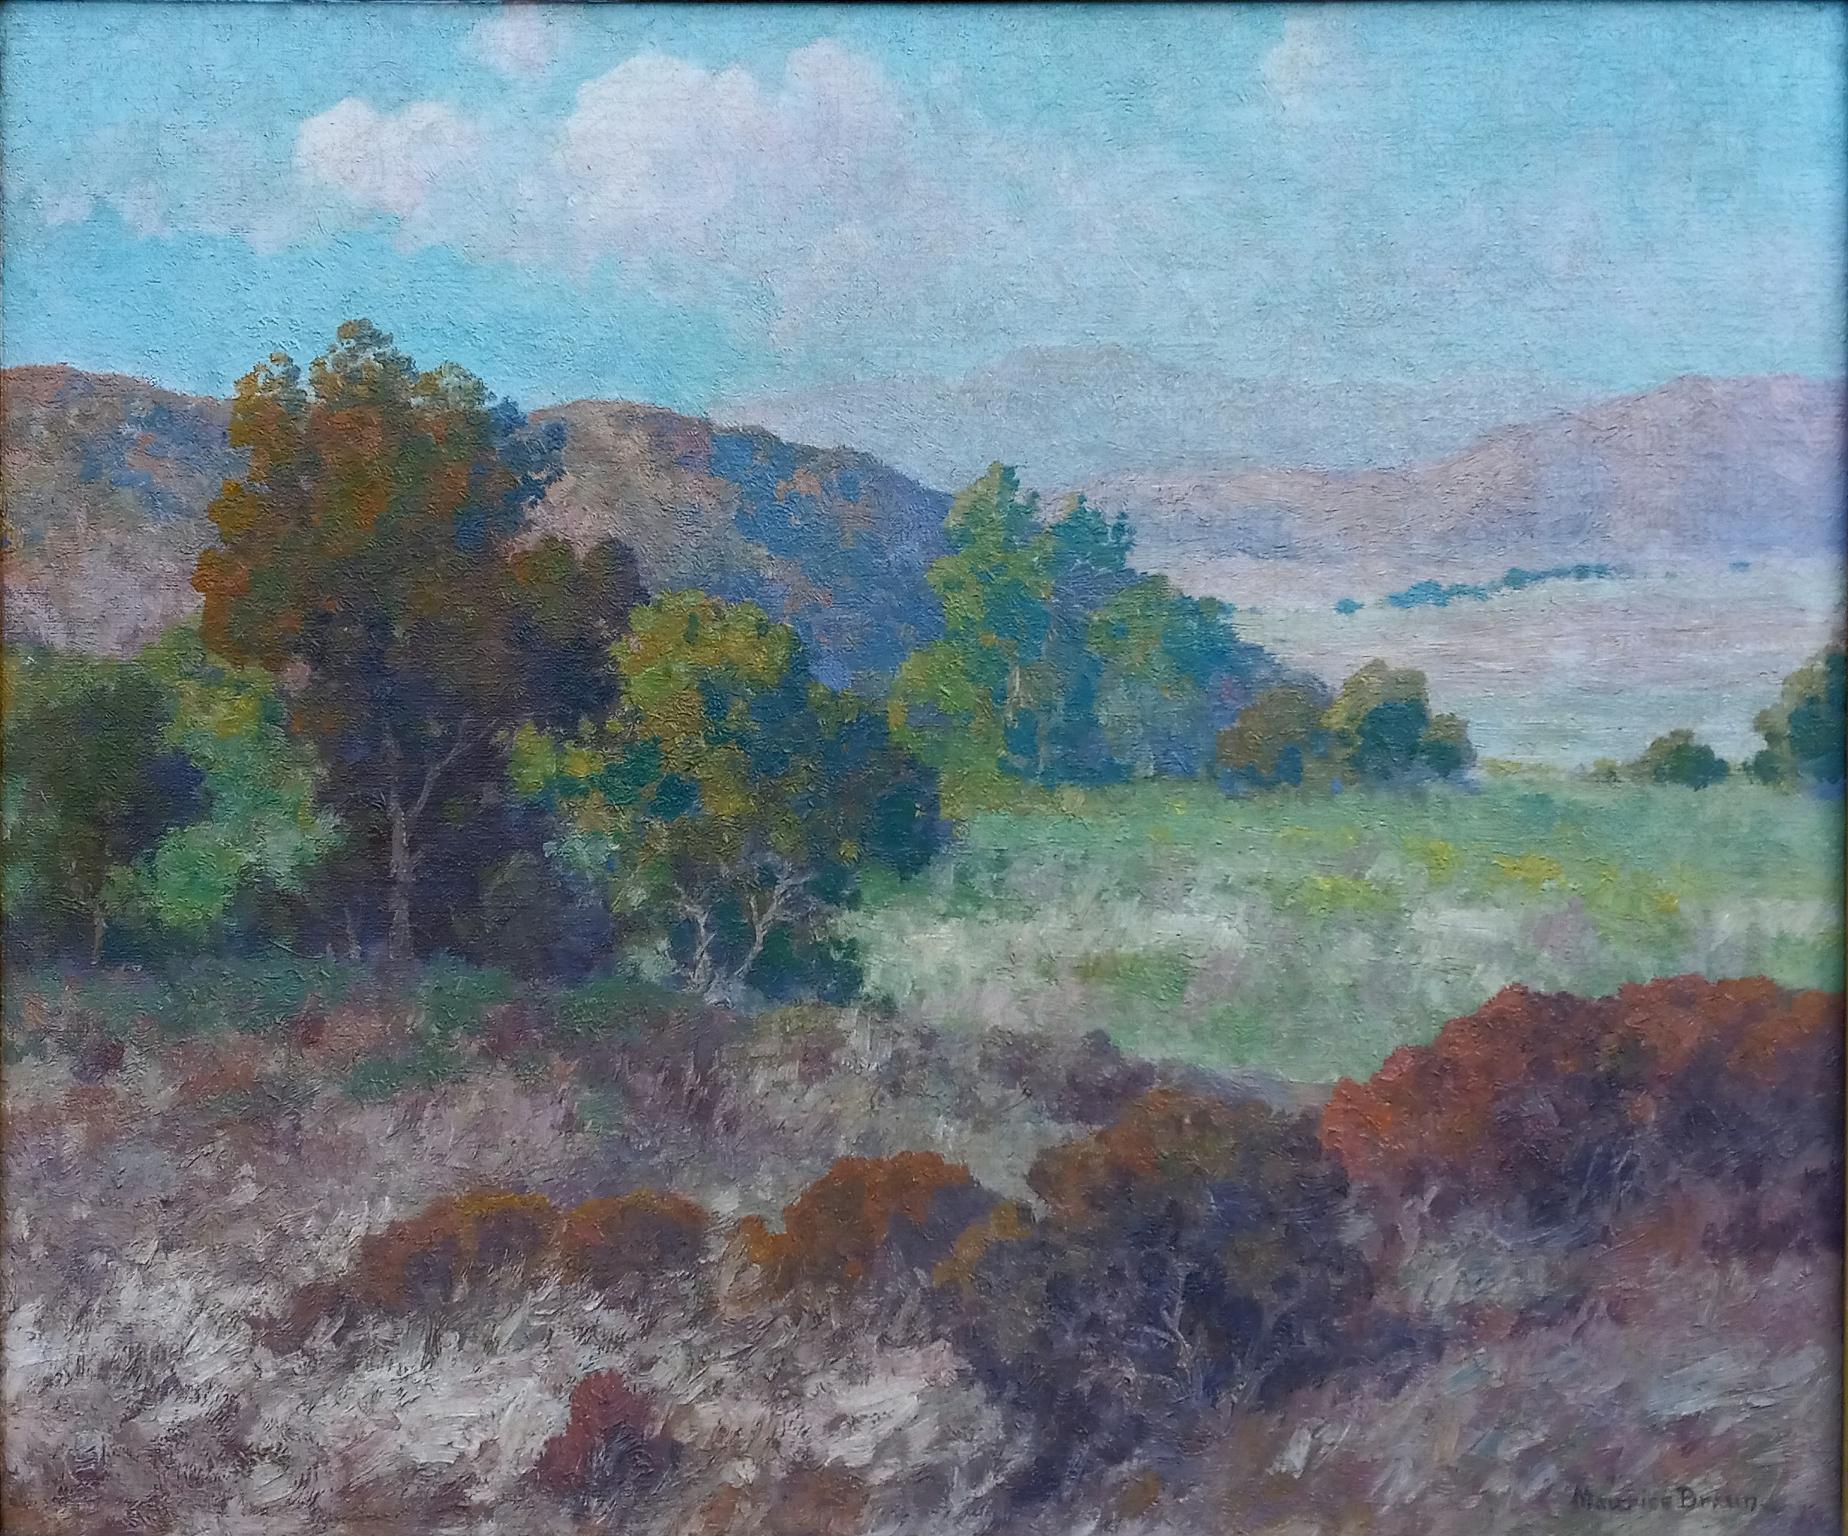 

Magnifique huile sur toile du célèbre artiste de San Diego Maurice Braun (1877-1941).
Le tableau mesure 20 